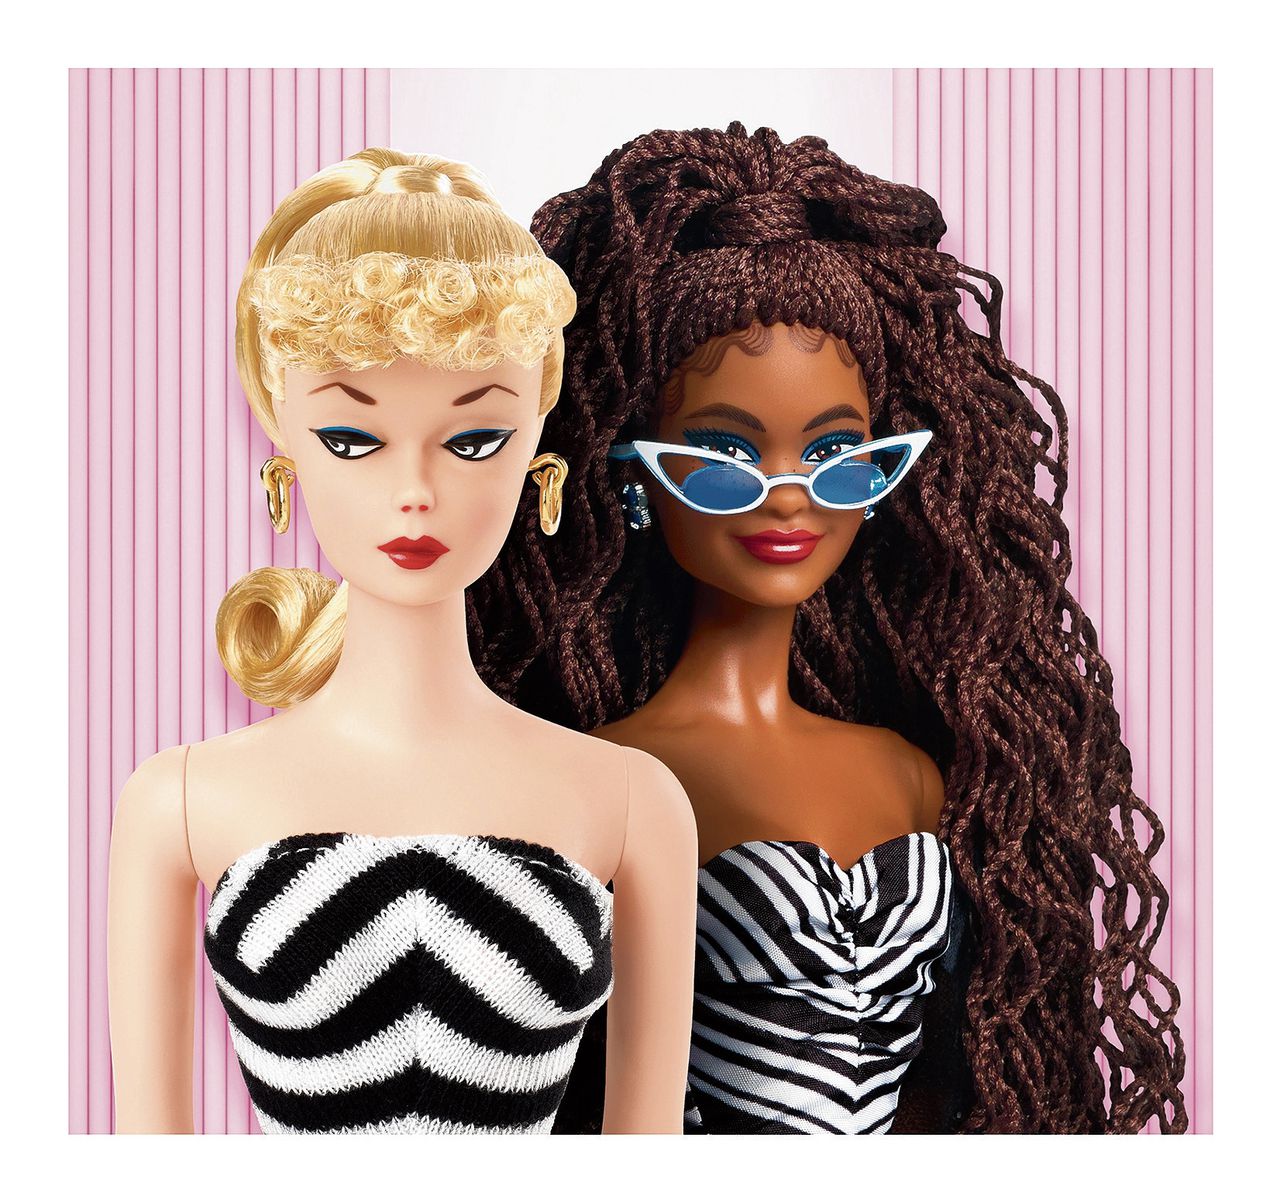 Voor Barbie-presidentpoppen blijkt een Barbie in het broekpak van Kamala Harris nog te gewaagd 